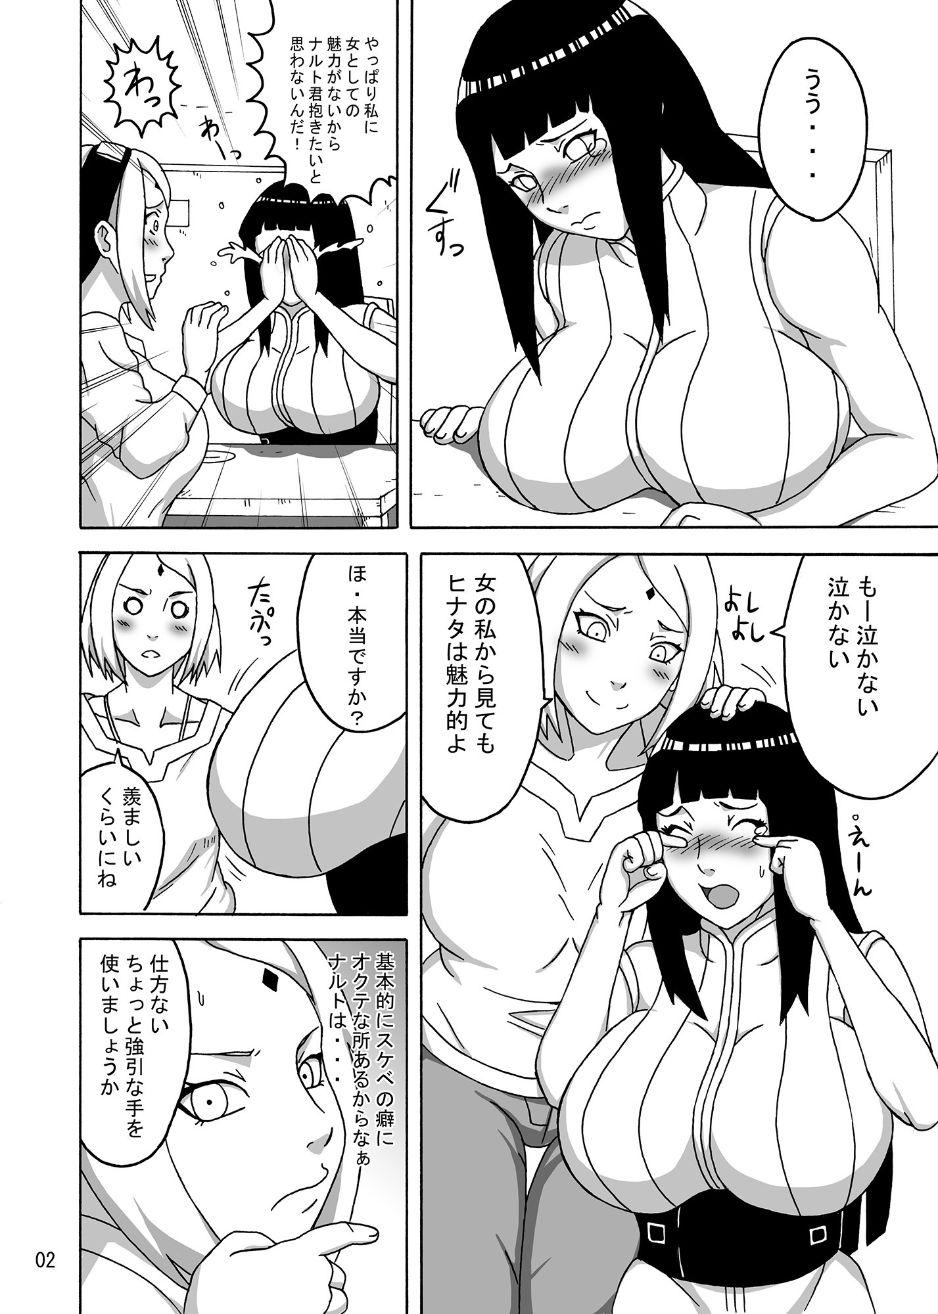 Nice Tits naruhina - Naruto Muscle - Page 5